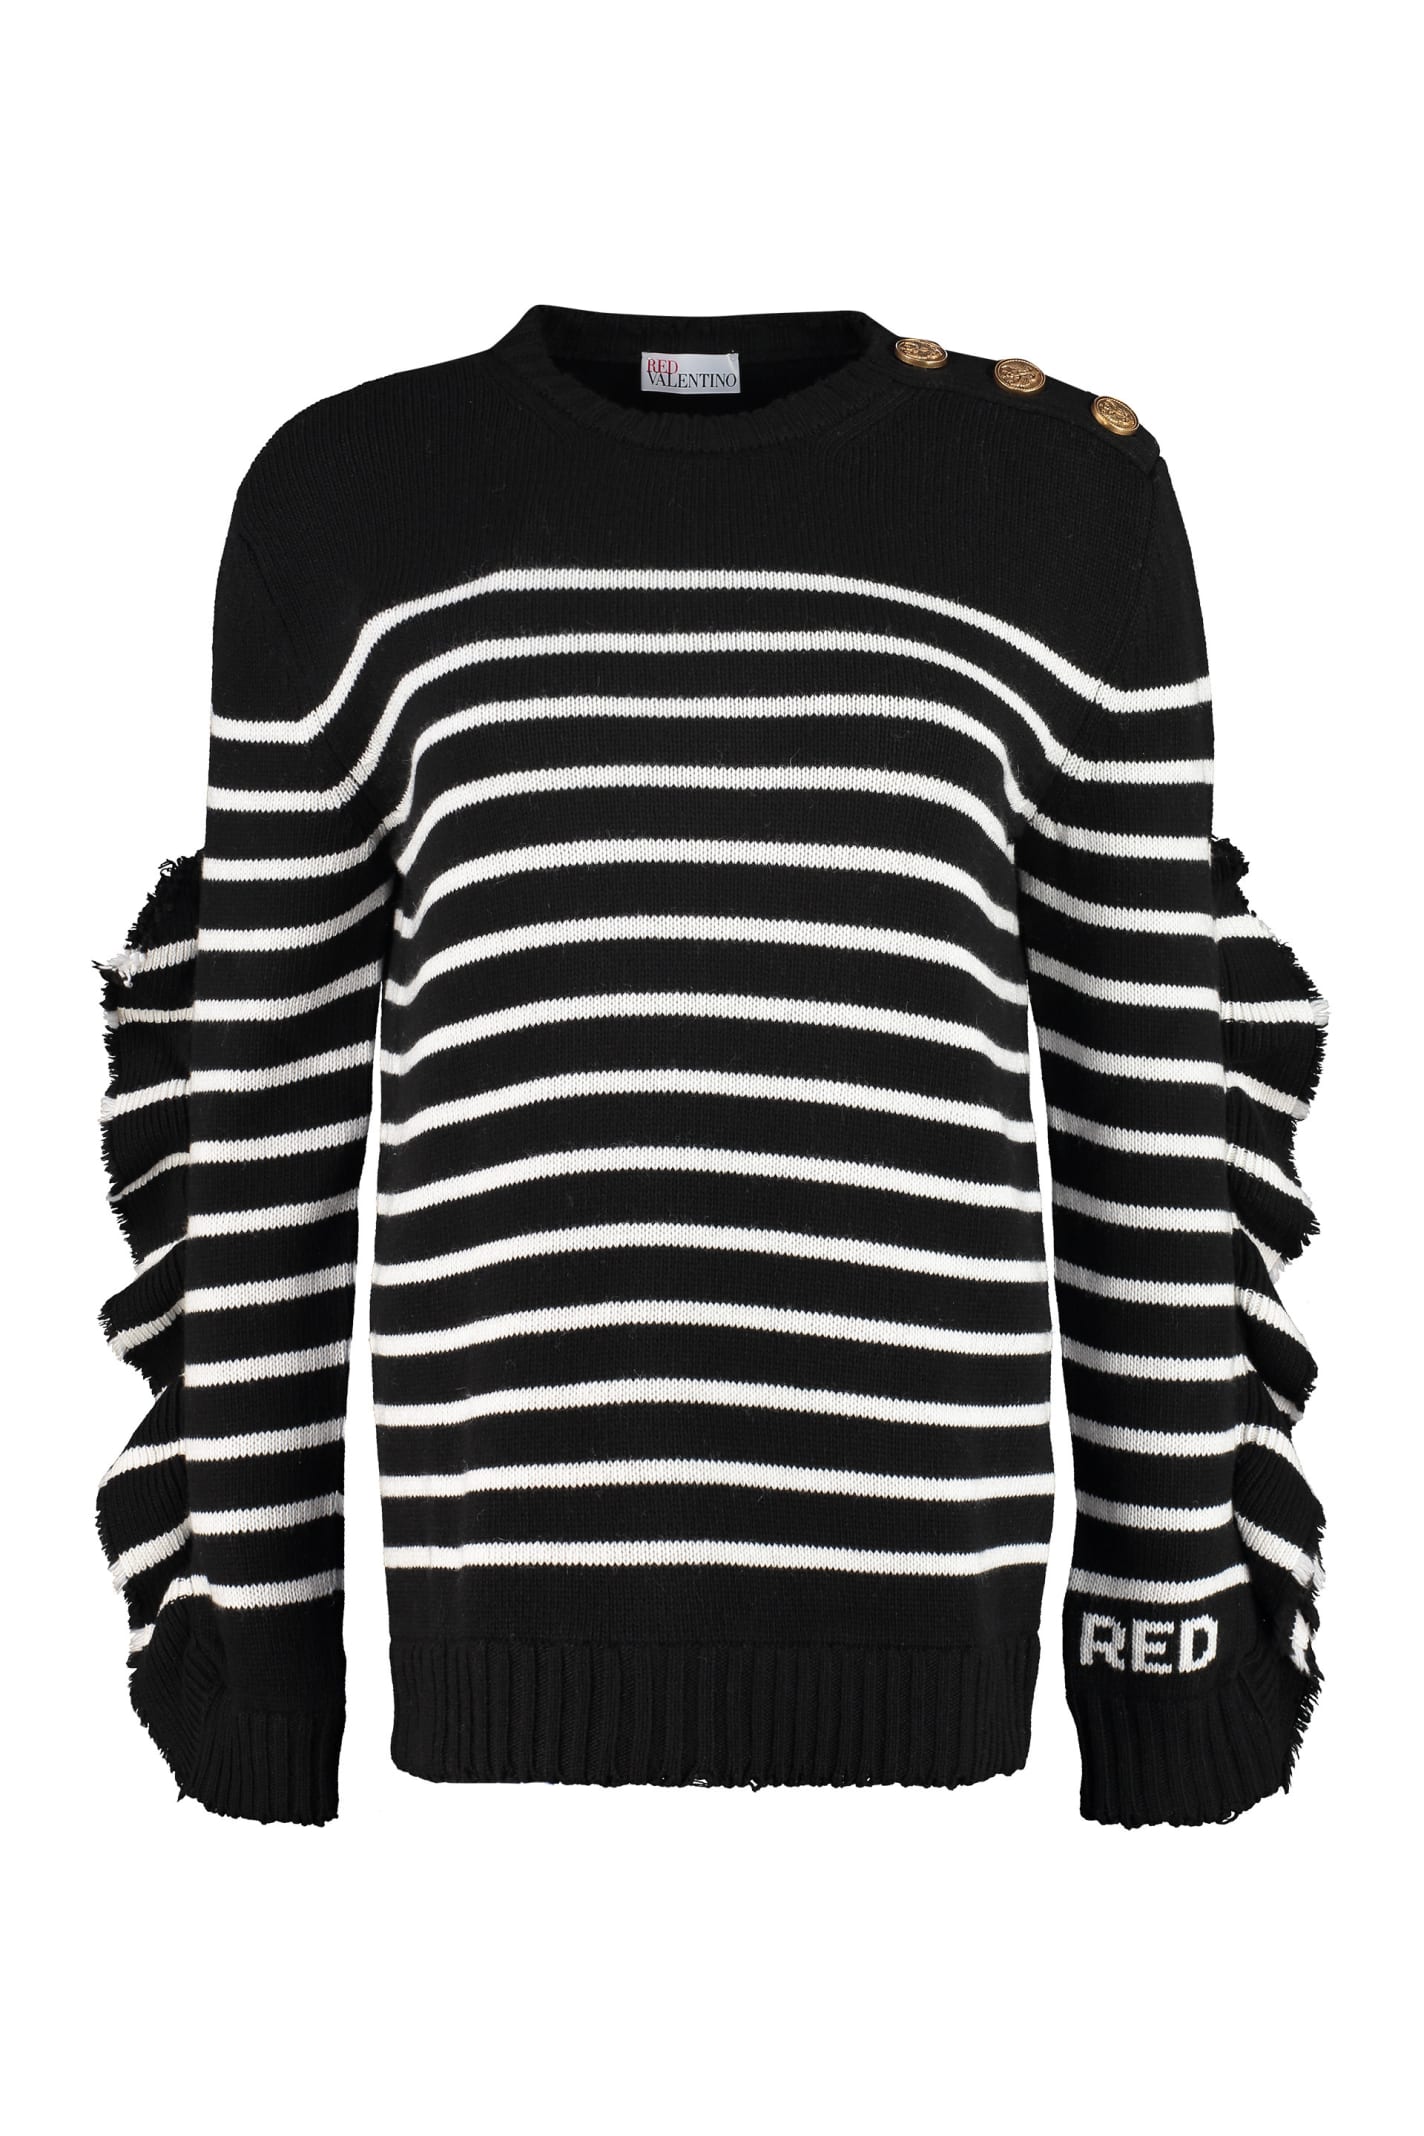 RED Valentino Striped Pullover